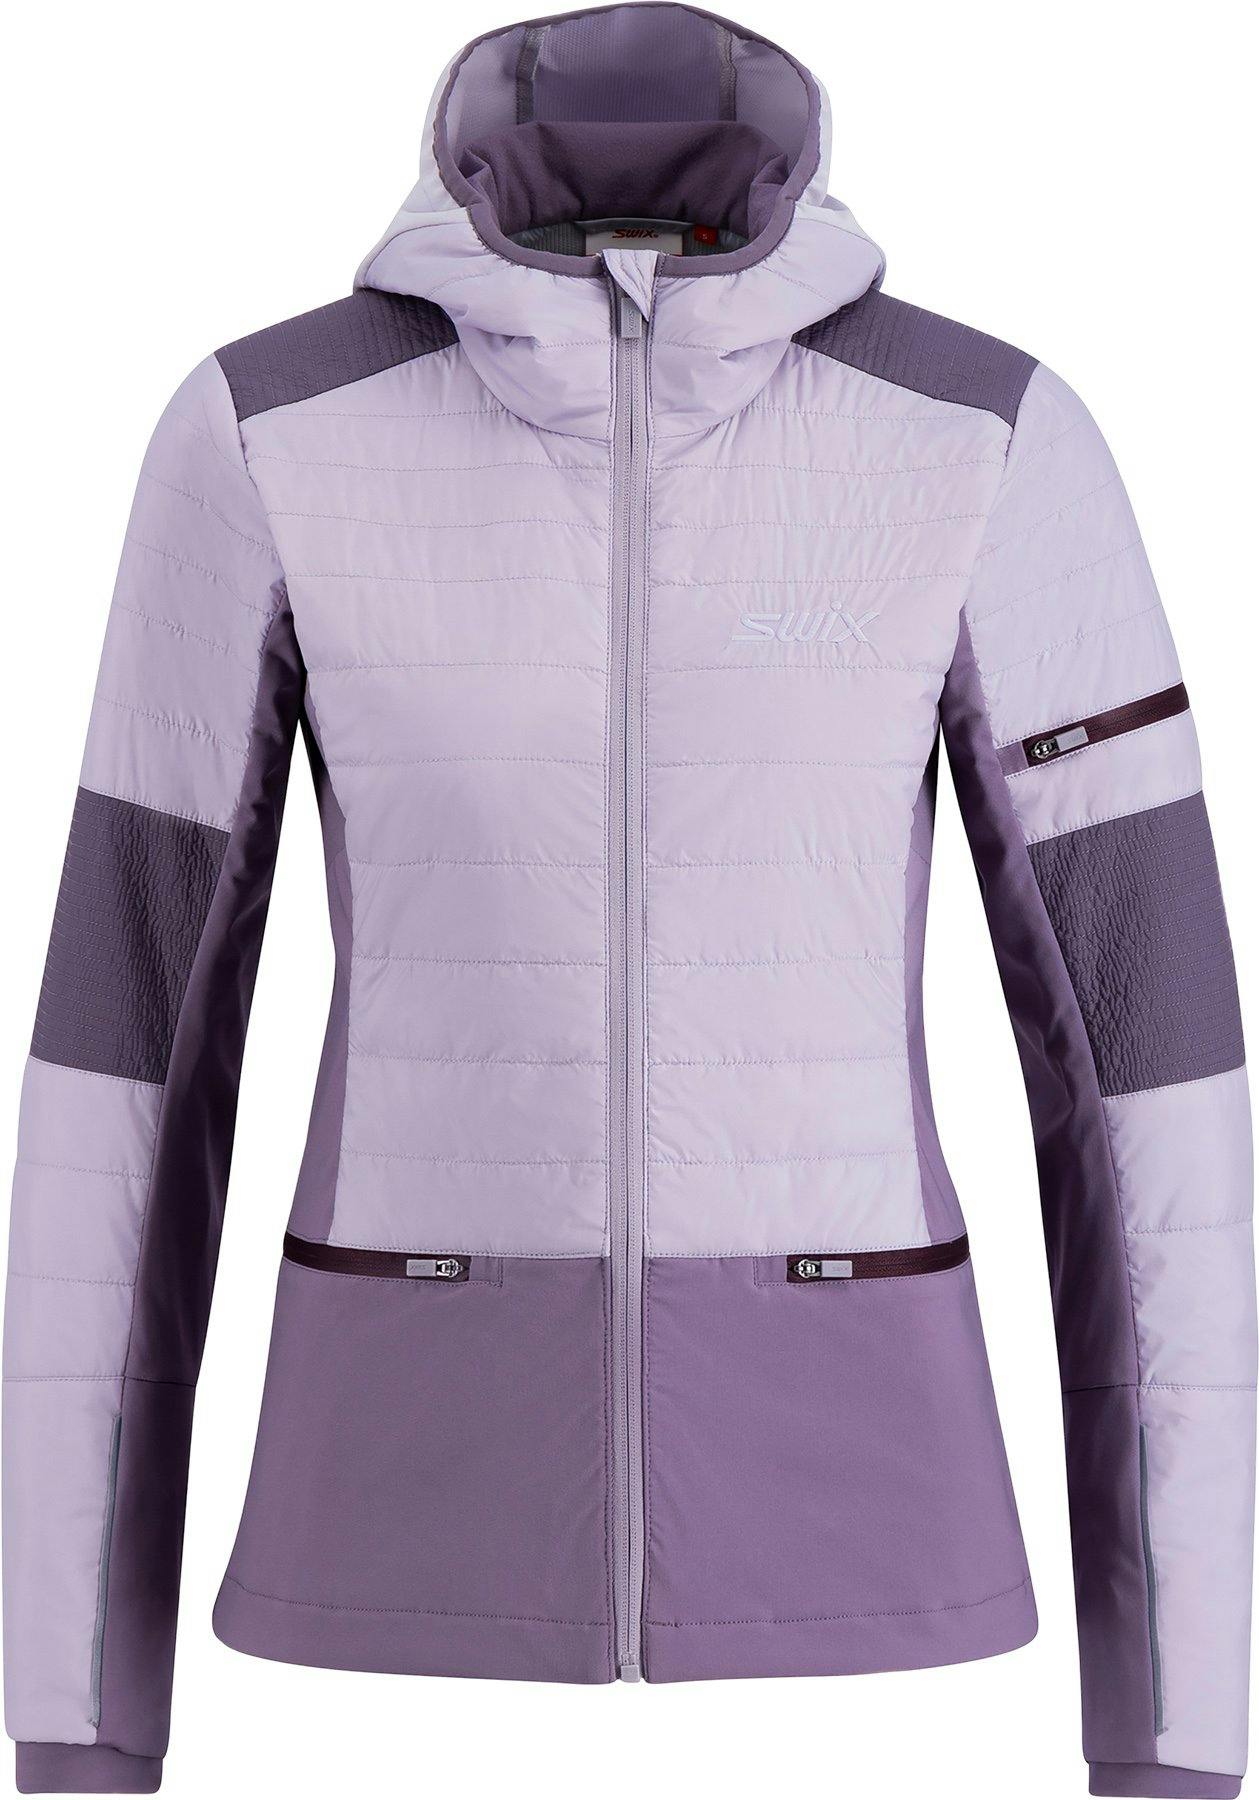 Product image for Horizon Jacket - Women's